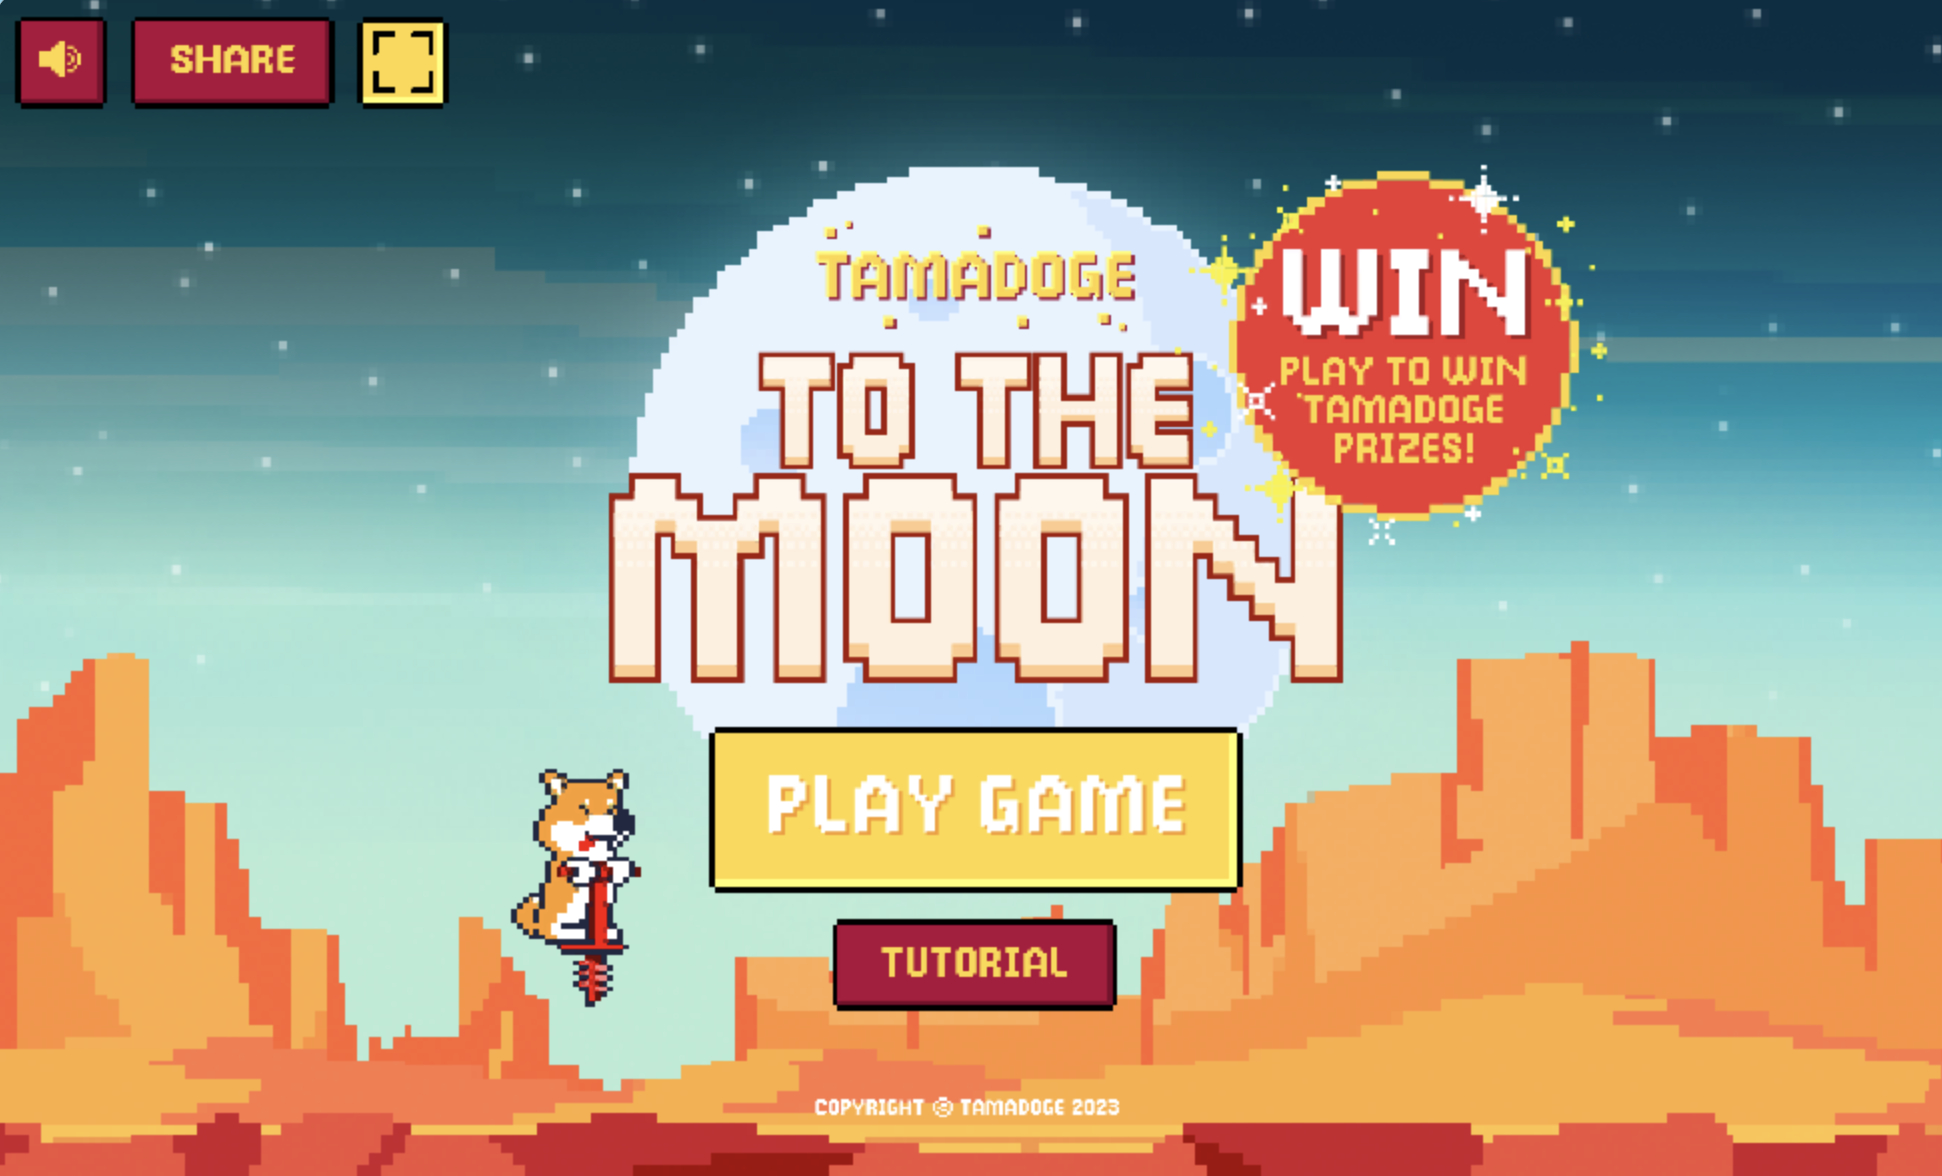 투더문(To The Moon) 크립토 게임 리뷰 – 타마도지 게임, 앱스토어 및 구글플레이에서 다운로드 가능